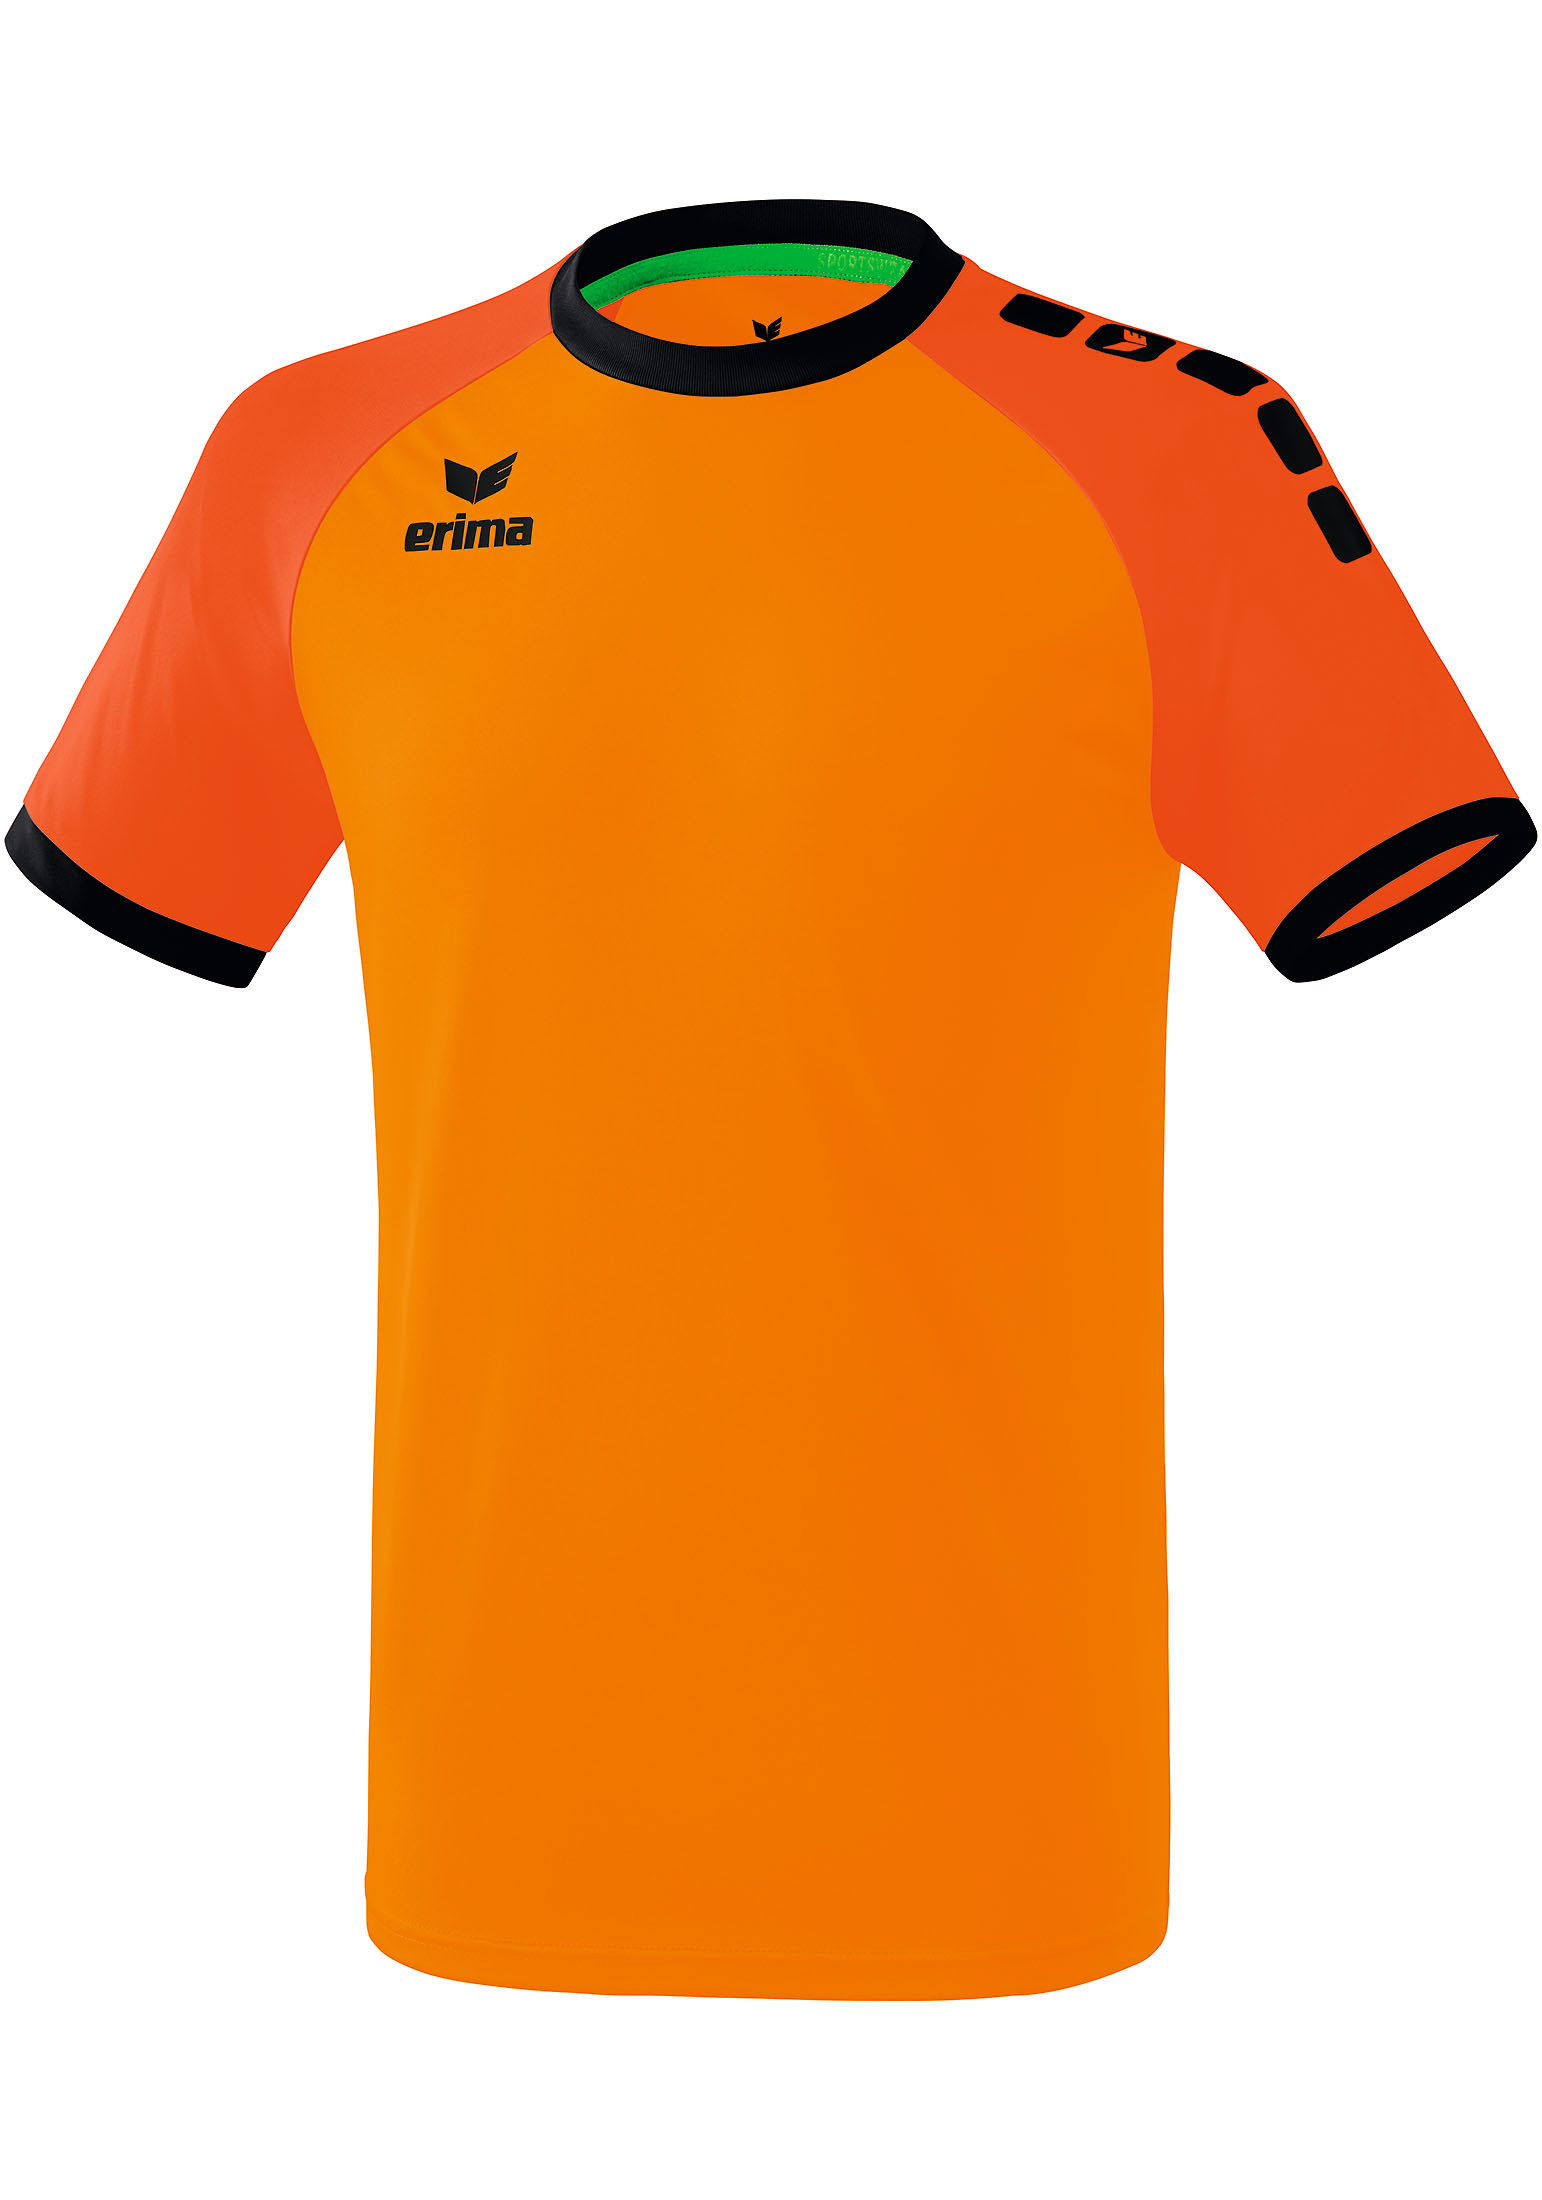 Спортивная футболка erima Zenari 3.0 Trikot, оранжевый рубашка erima zenari 3 0 trikot серый меланж черный темно серый